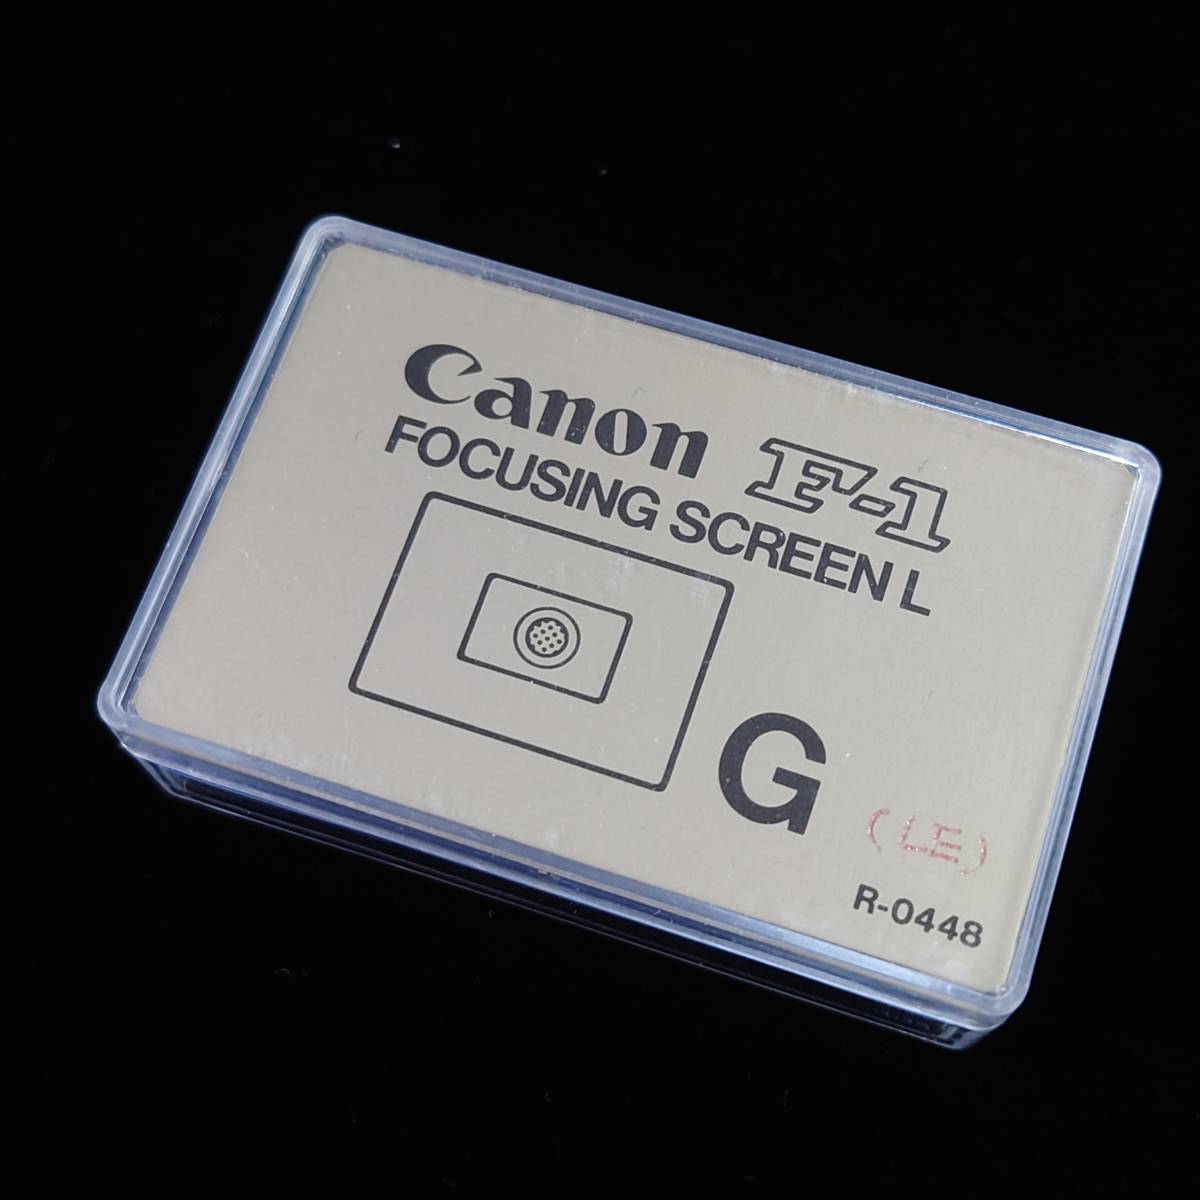 美品 Canon F-1用 FOCUSING SCREEN L G マイクロプリズム式小口径用 フォーカシングスクリーン 旧F-1 キヤノン ②_画像1